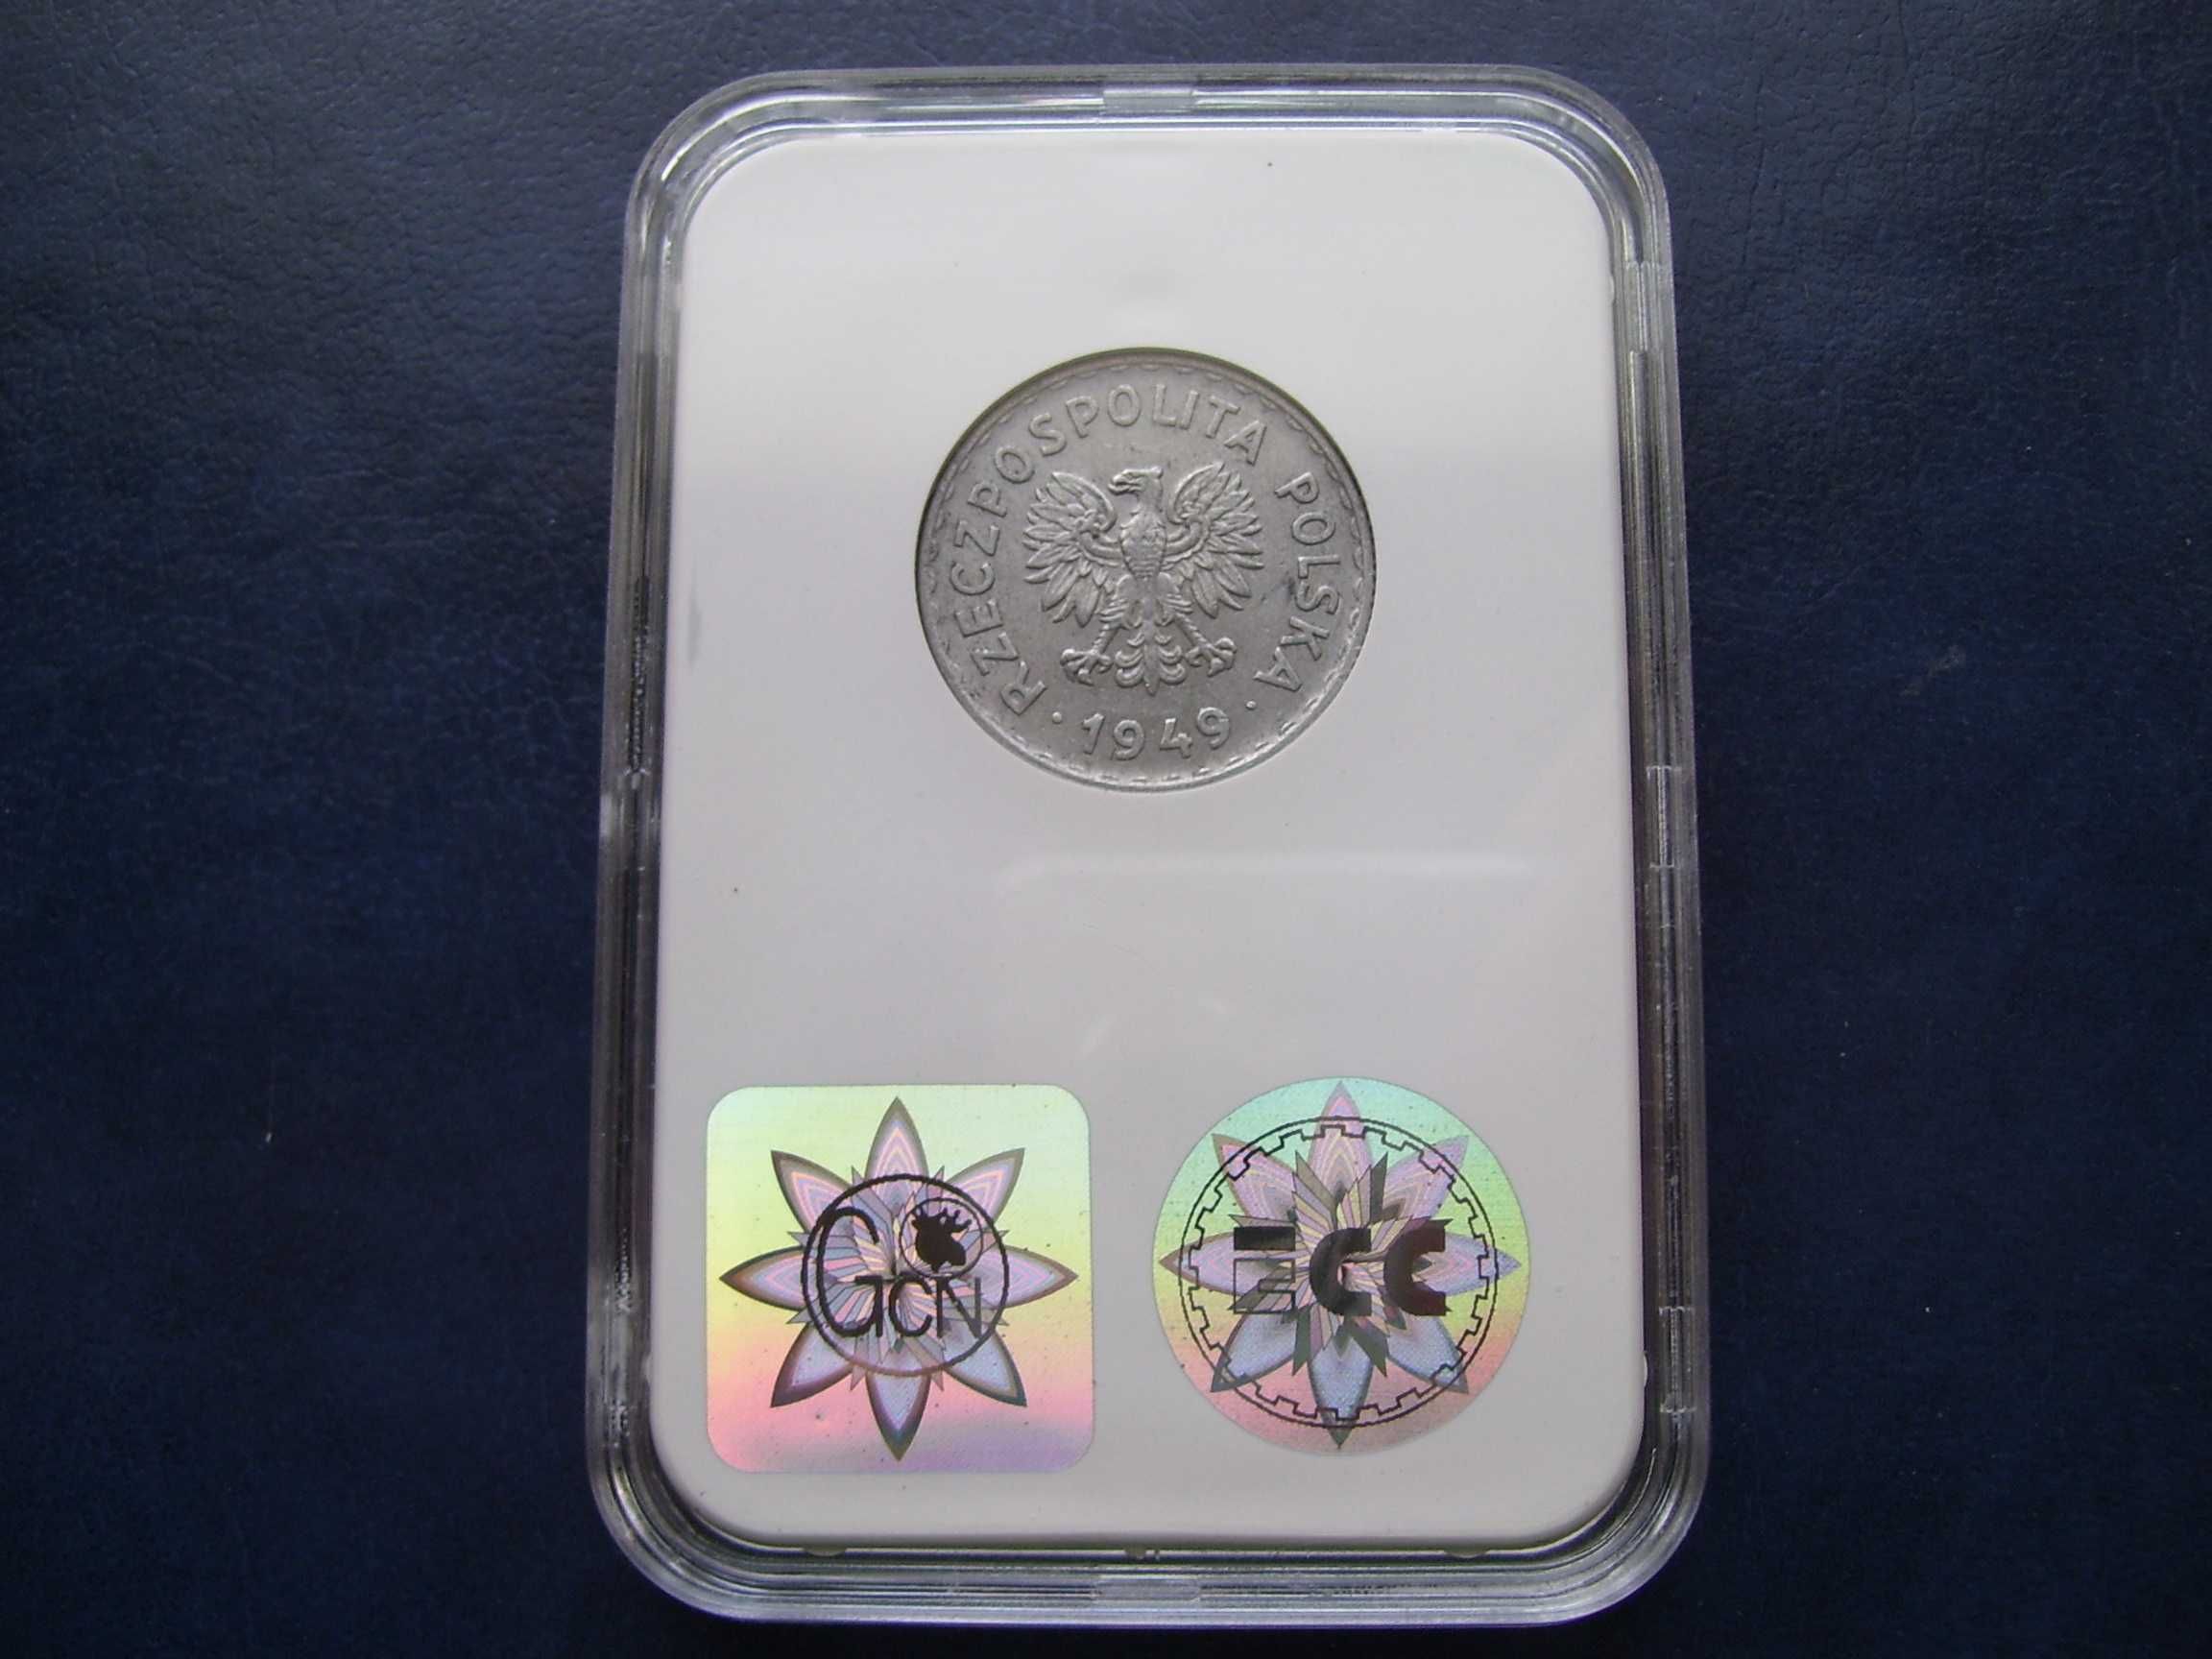 Stare monety 1 złoty 1949 AL skrętka Grading AU55 PRL piękna